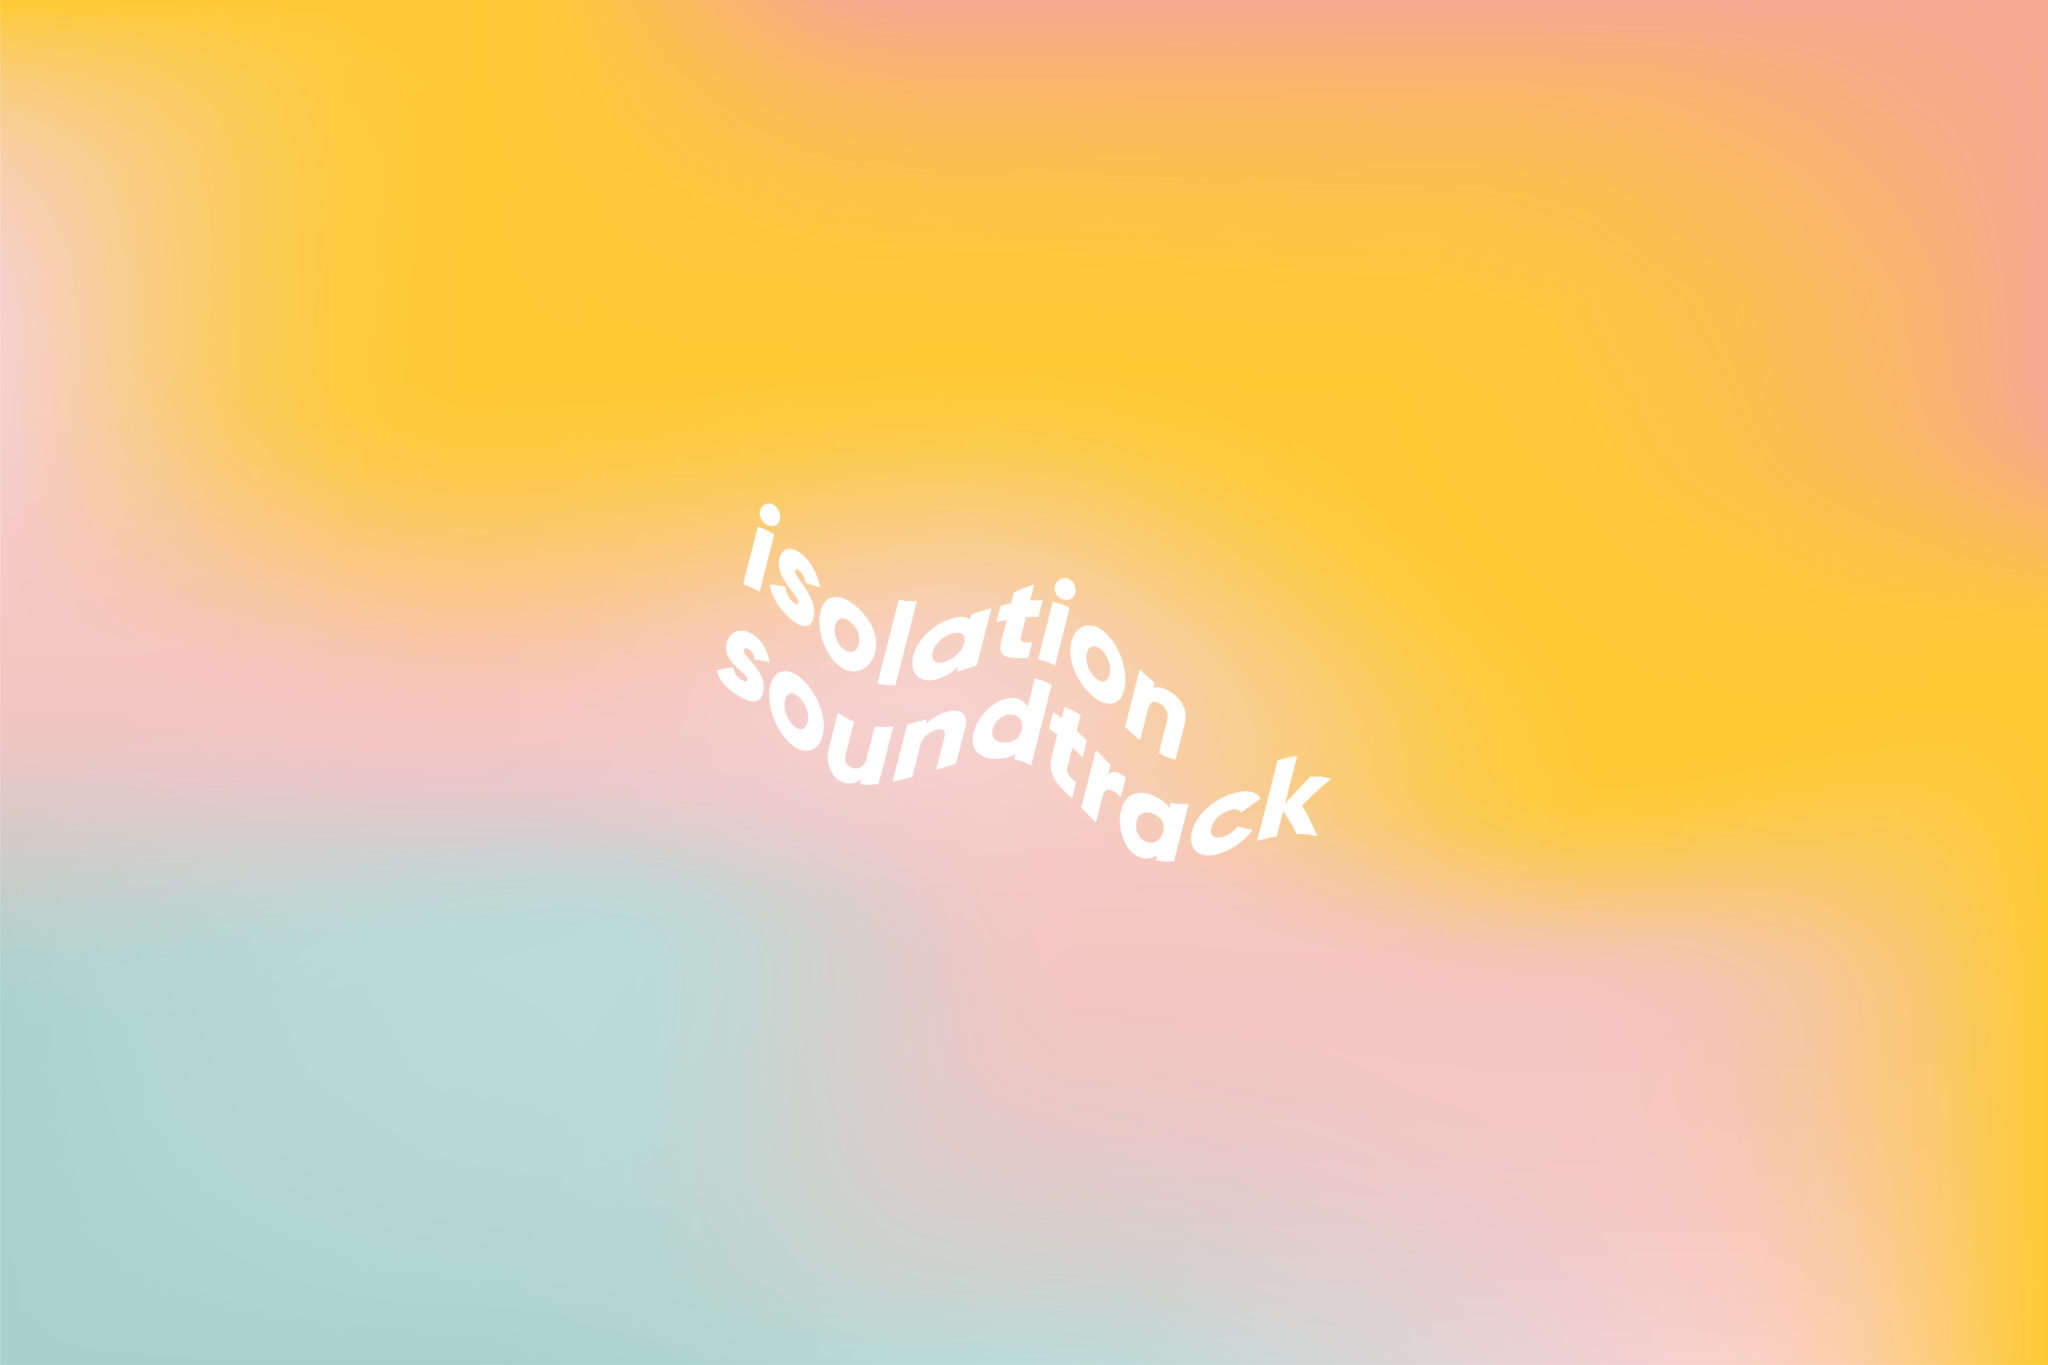 Isolation Soundtrack